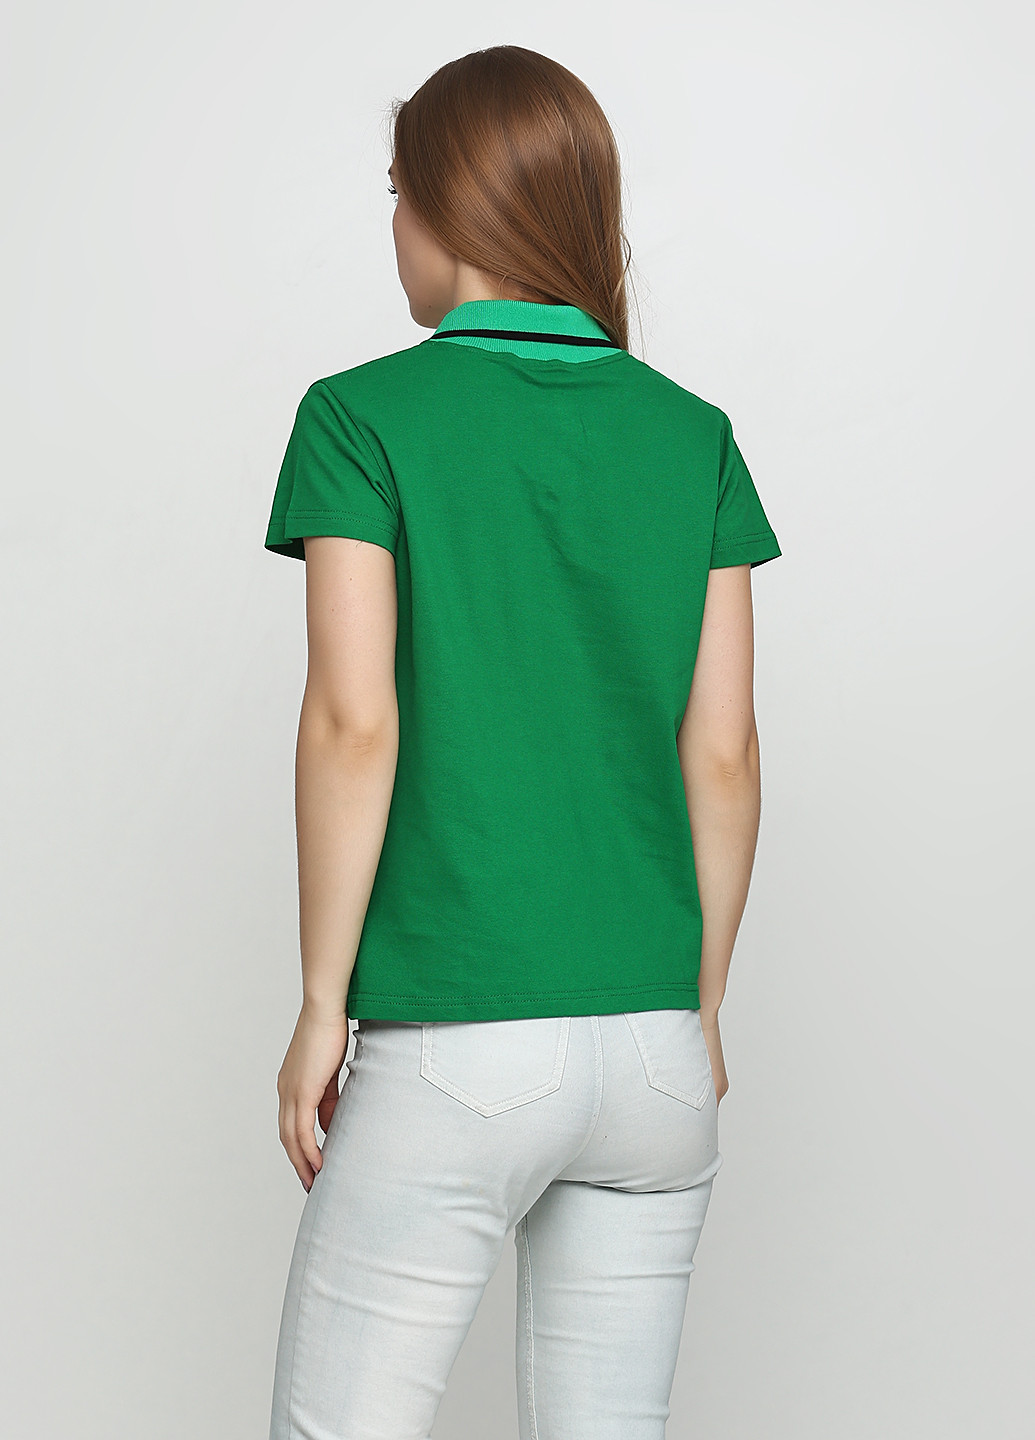 Зеленая женская футболка-поло Manatki с надписью